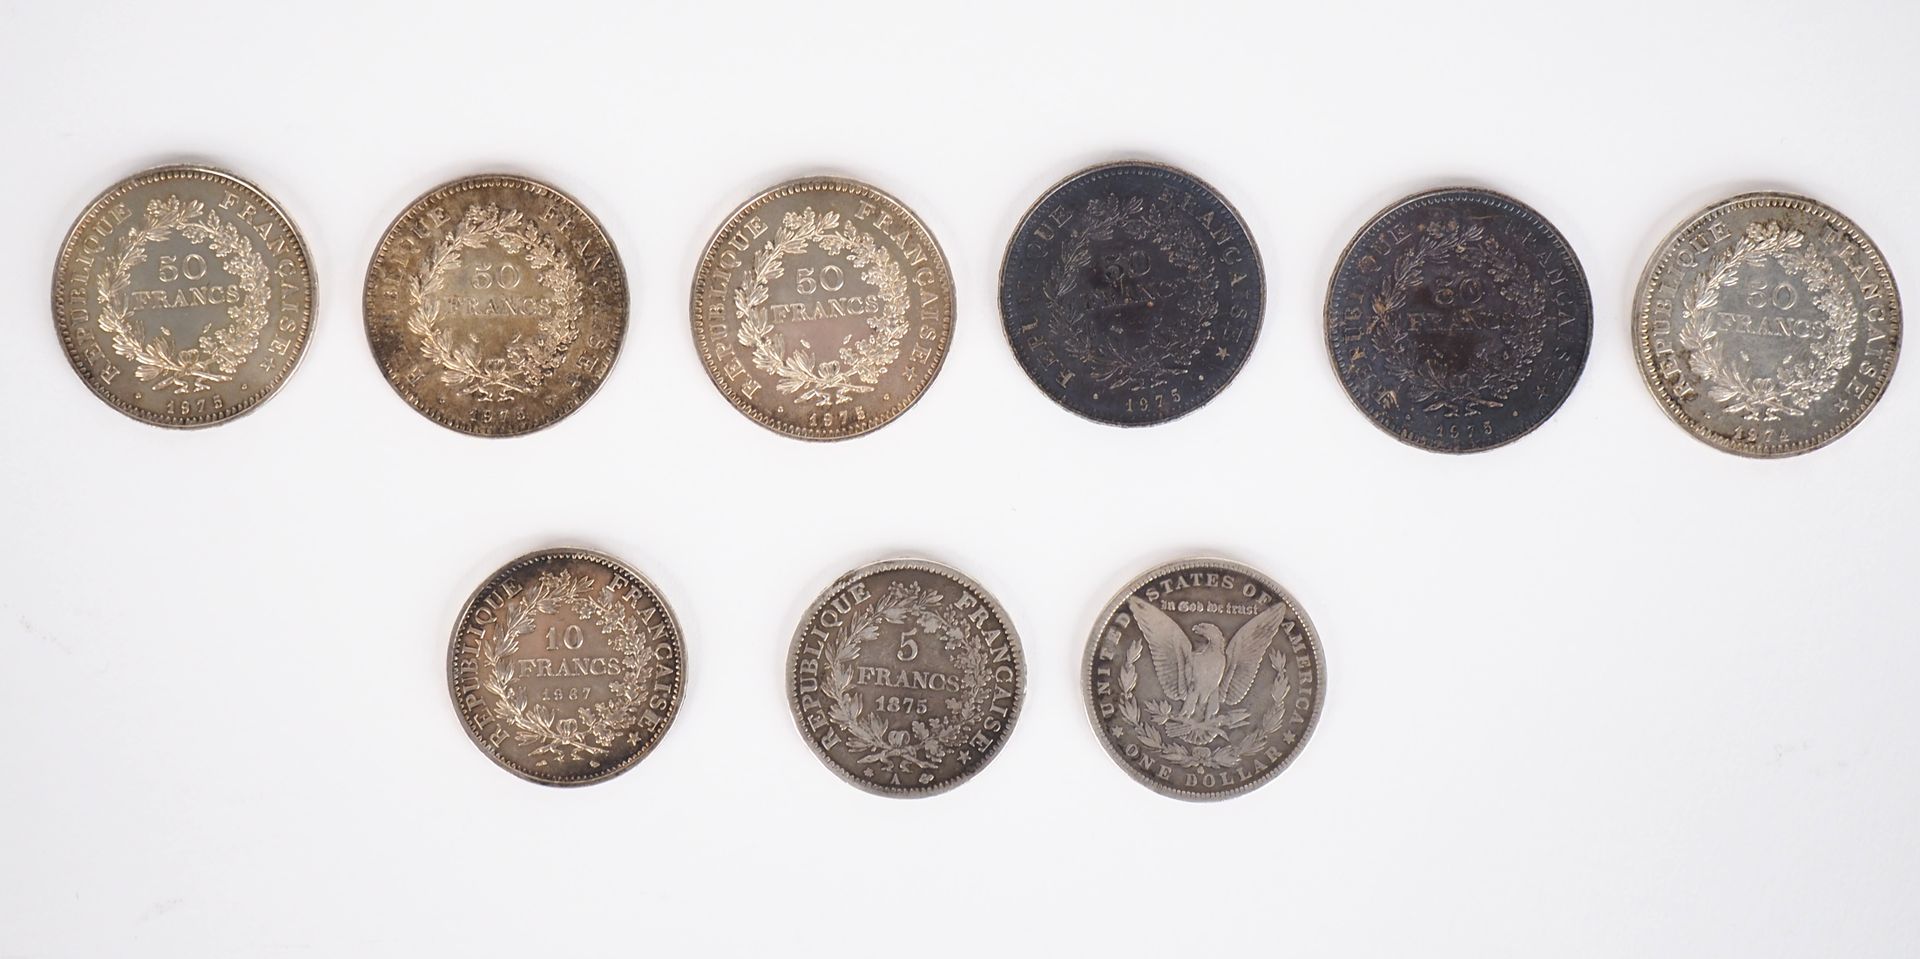 Null - seis monedas de plata de 50 francos, 1974 y 1975 (x5).

- una moneda de p&hellip;